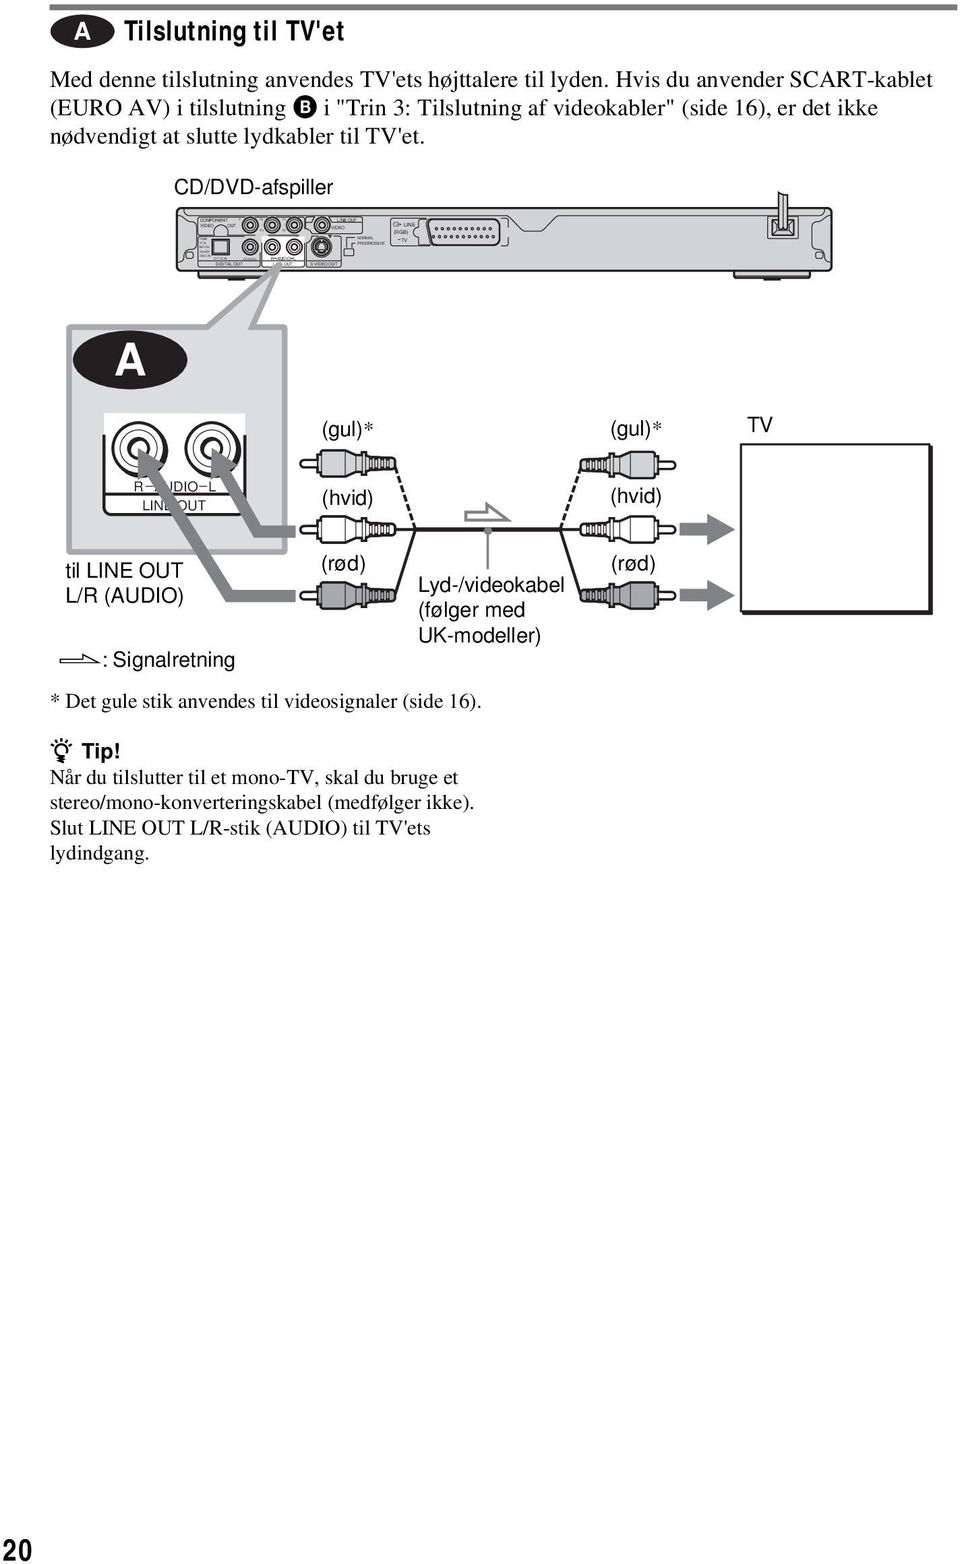 Hvis du anvender SCART-kablet (EURO AV) i tilslutning B i "Trin 3: Tilslutning af videokabler" (side 16), er det ikke nødvendigt at slutte lydkabler til TV'et.